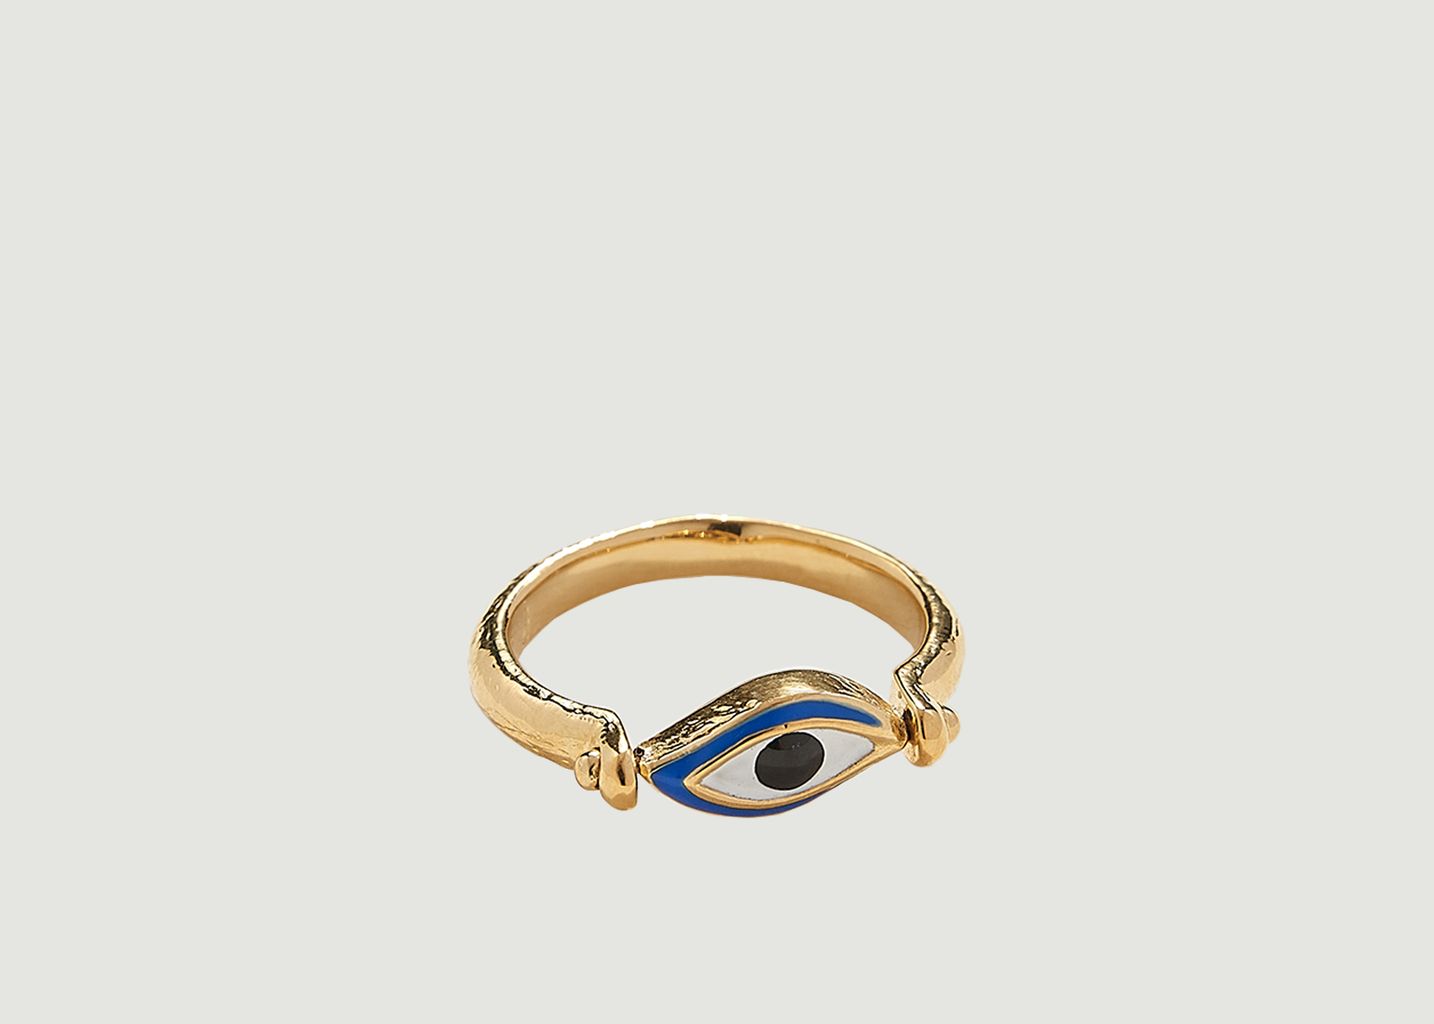 Gold plated brass and enamel eye ring - Pamela Love